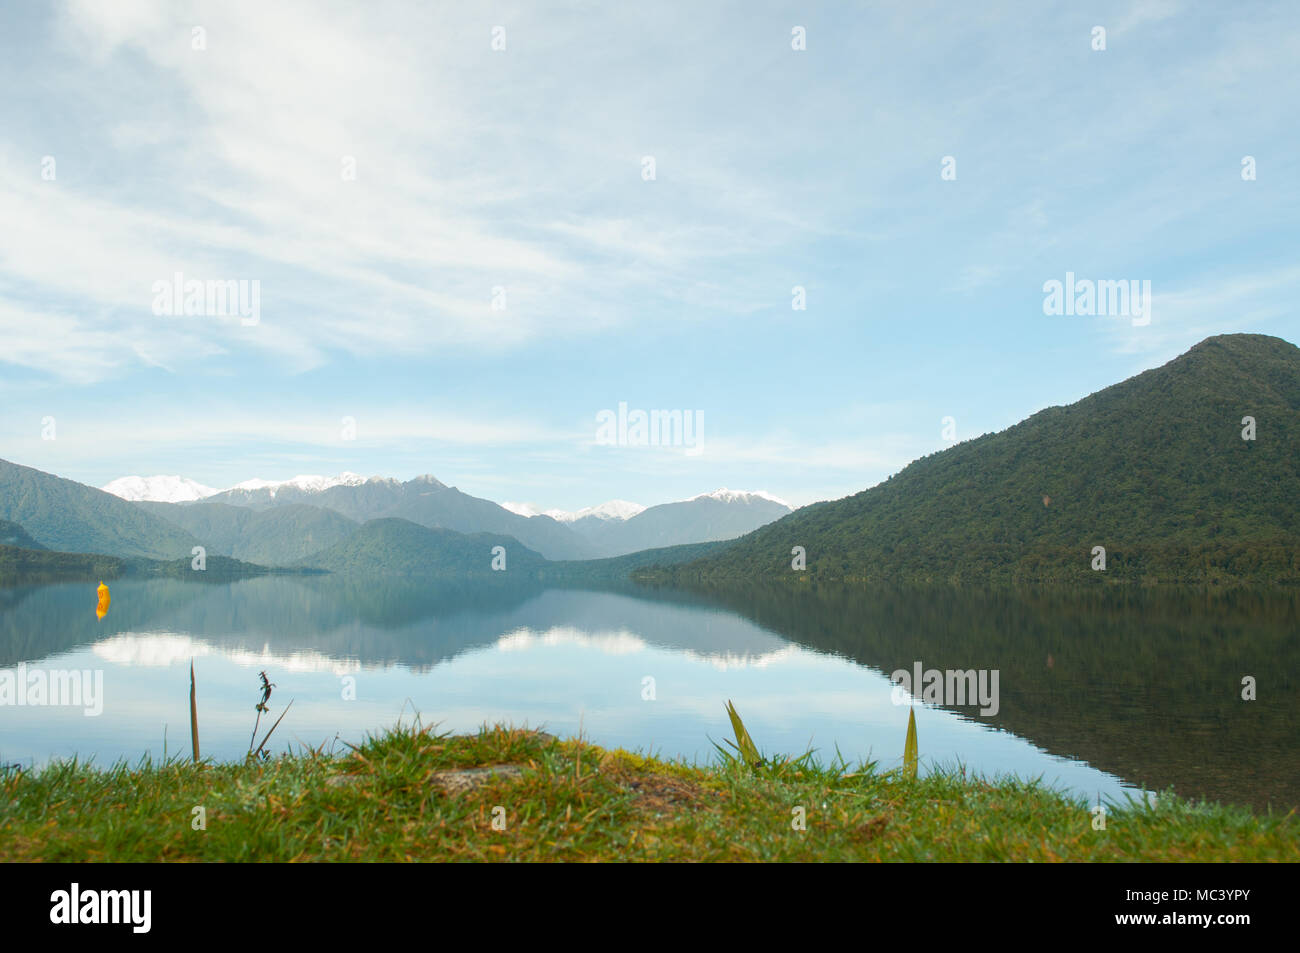 Questa è una foto scattata in Nuova Zelanda. Le montagne e il lago fanno sentire pulito e fresco. Sembra una buona base per alcuni prodotti. Foto Stock